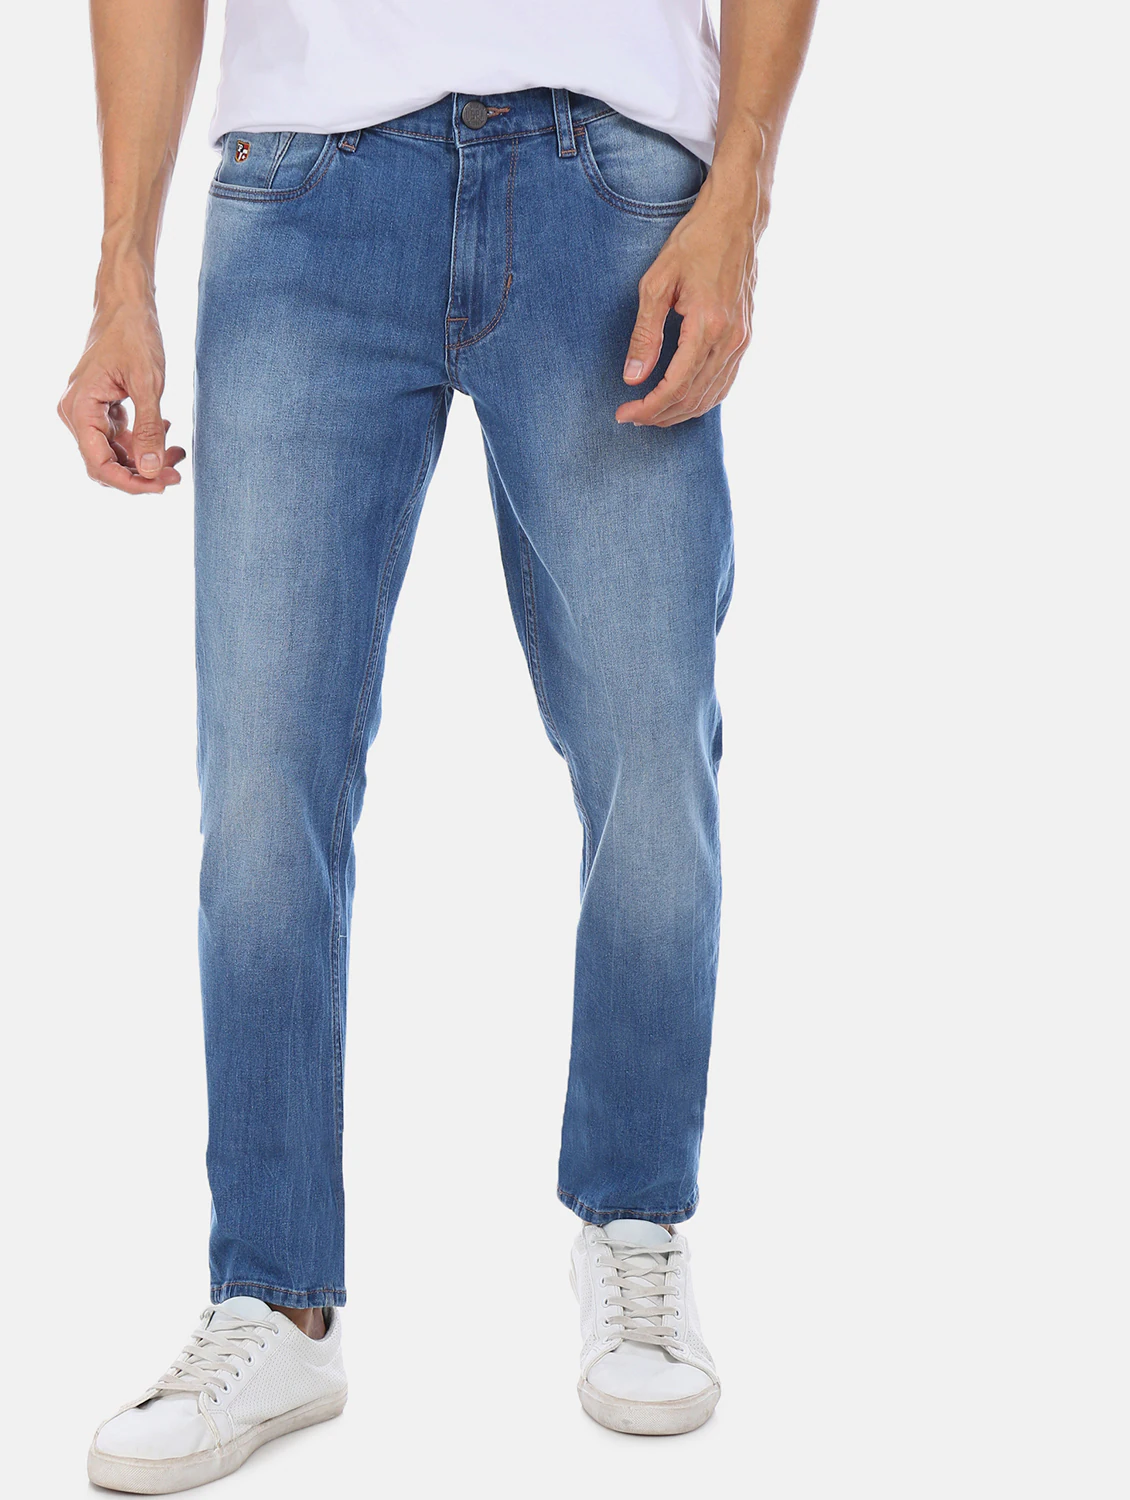 Aggregate 187+ light blue washed denim jeans latest